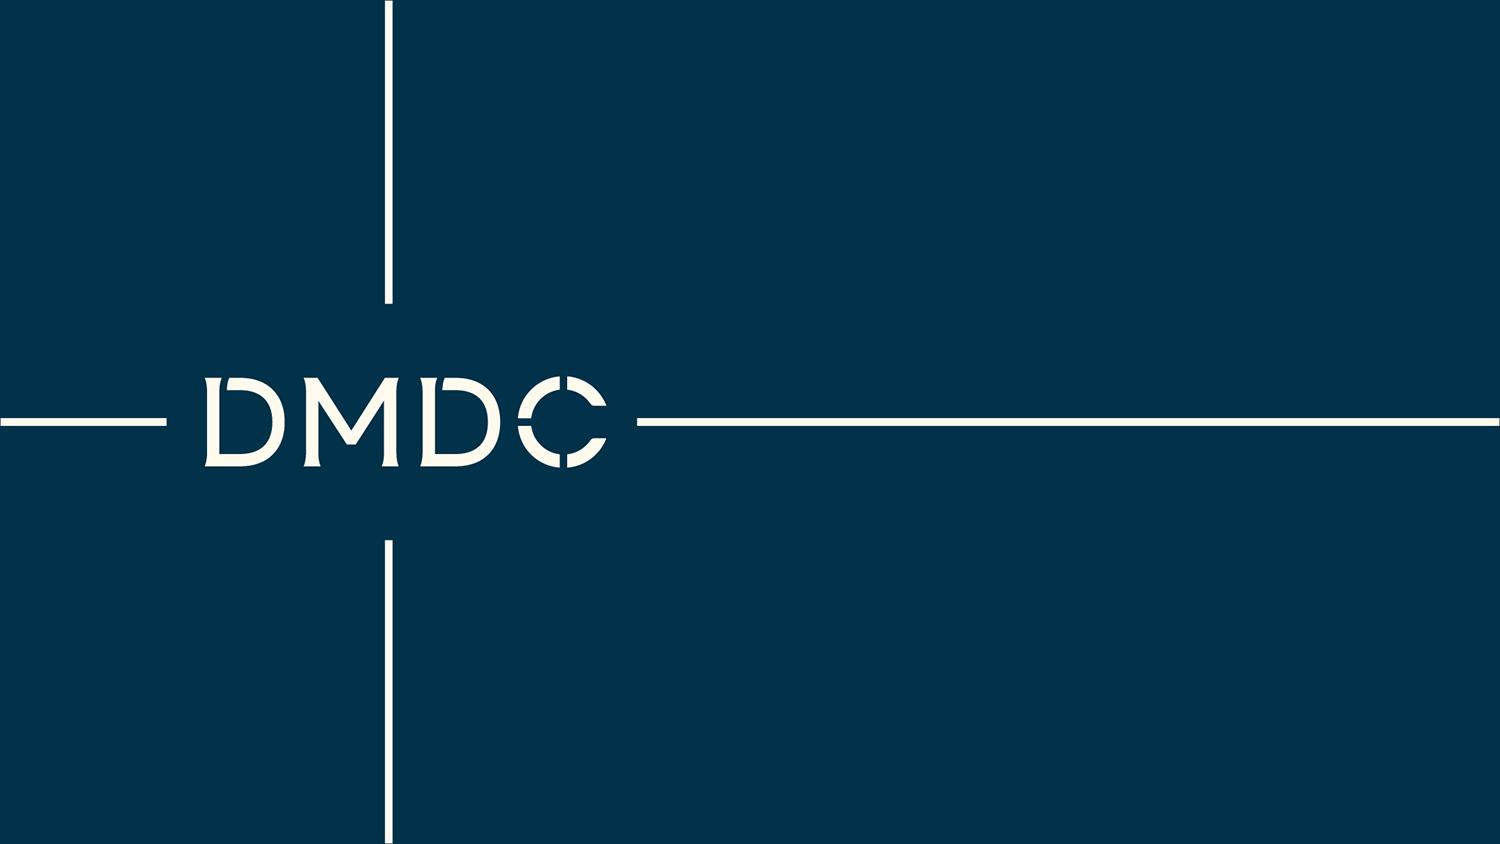 DMDC品牌形象设计提案-10.png